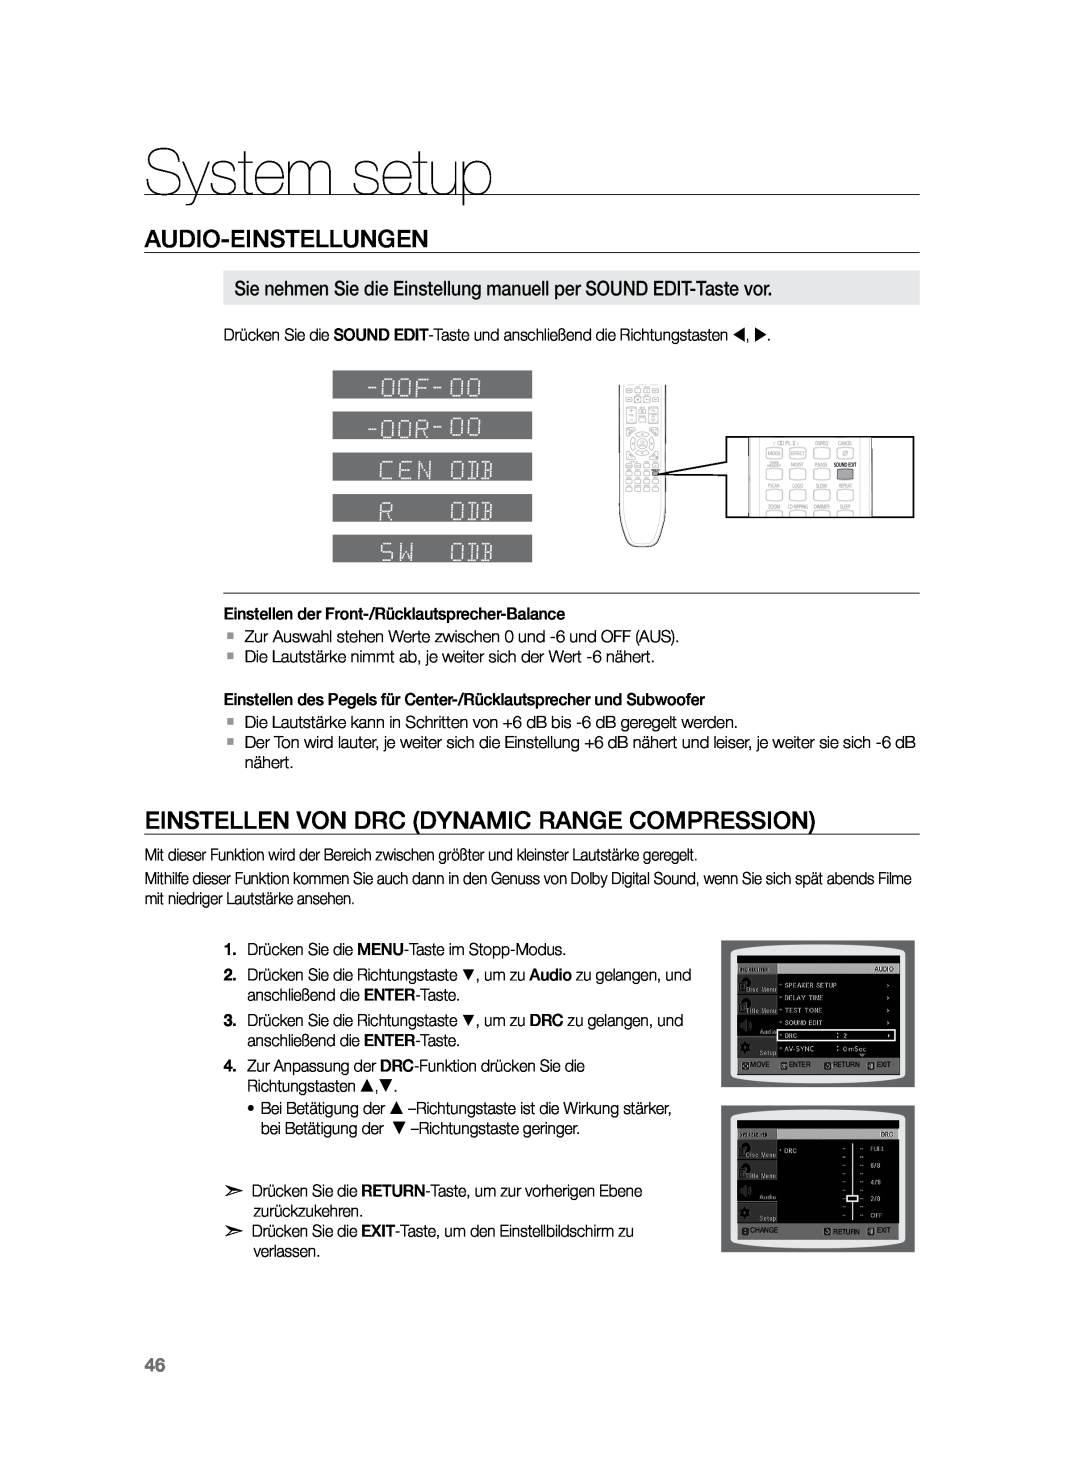 Samsung HT-Z120T/EDC, HT-Z120T/XEF manual Einstellen von DRC Dynamic Range Compression, System setup, Audio-Einstellungen 